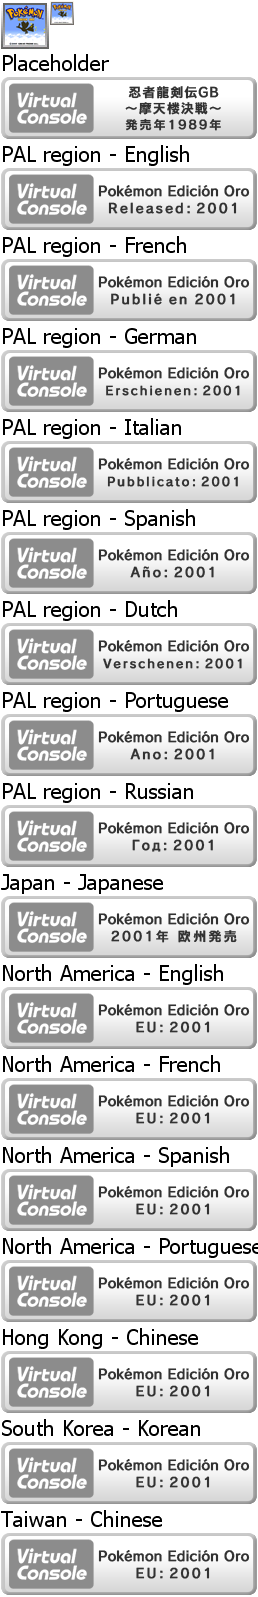 Virtual Console - Pokémon Edición Oro